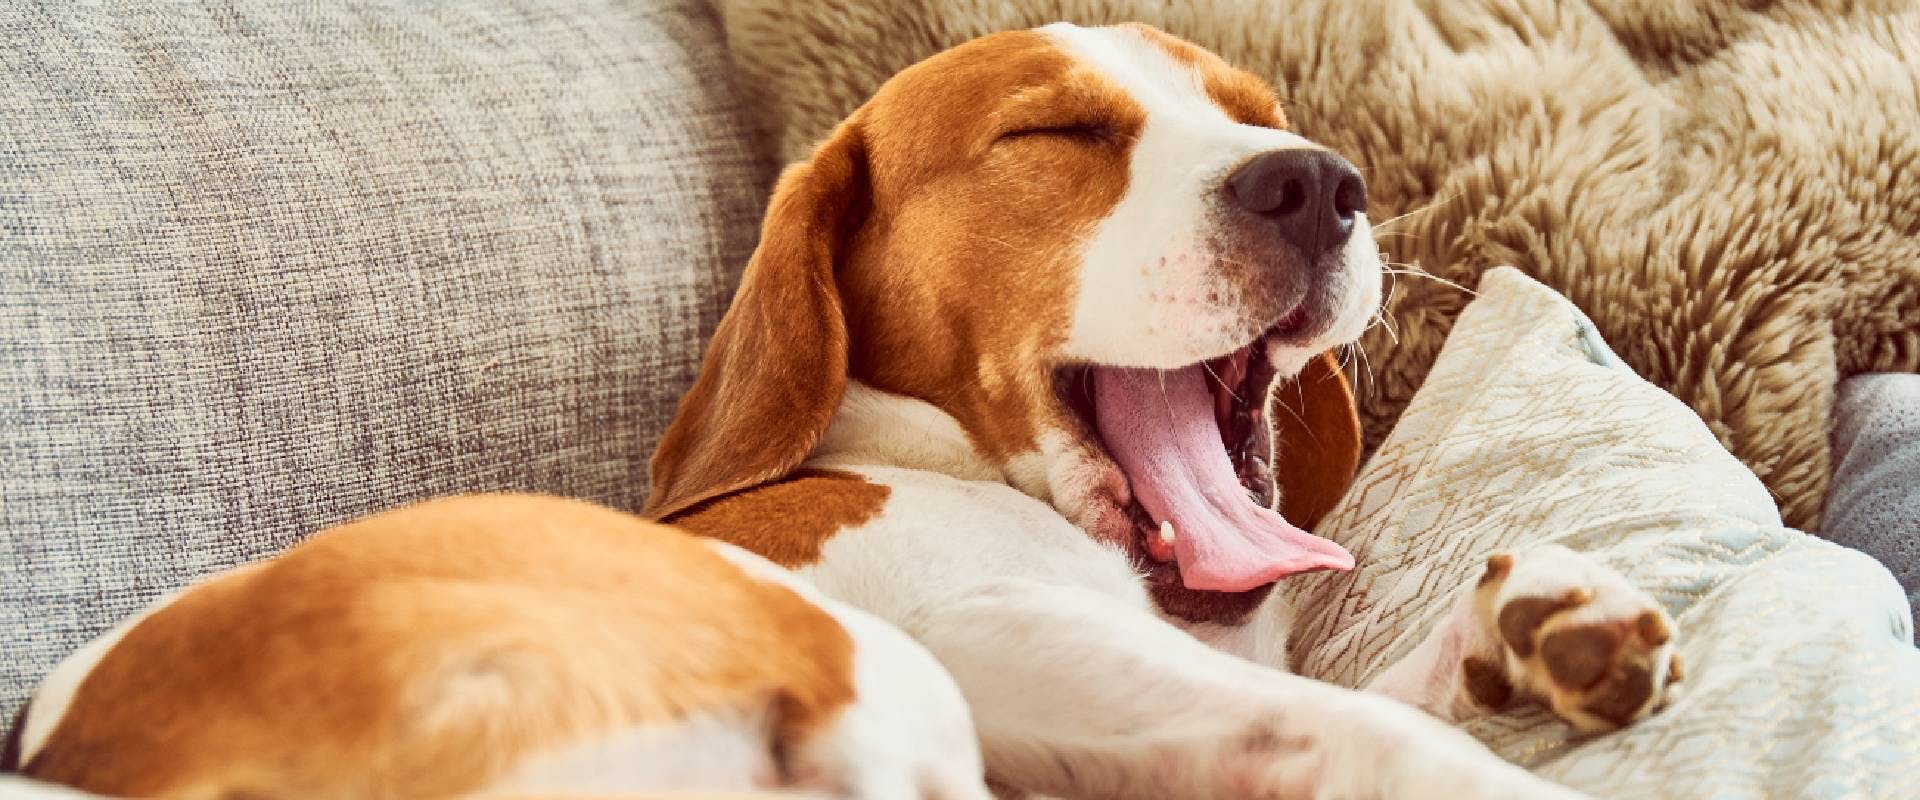 Beagle yawning